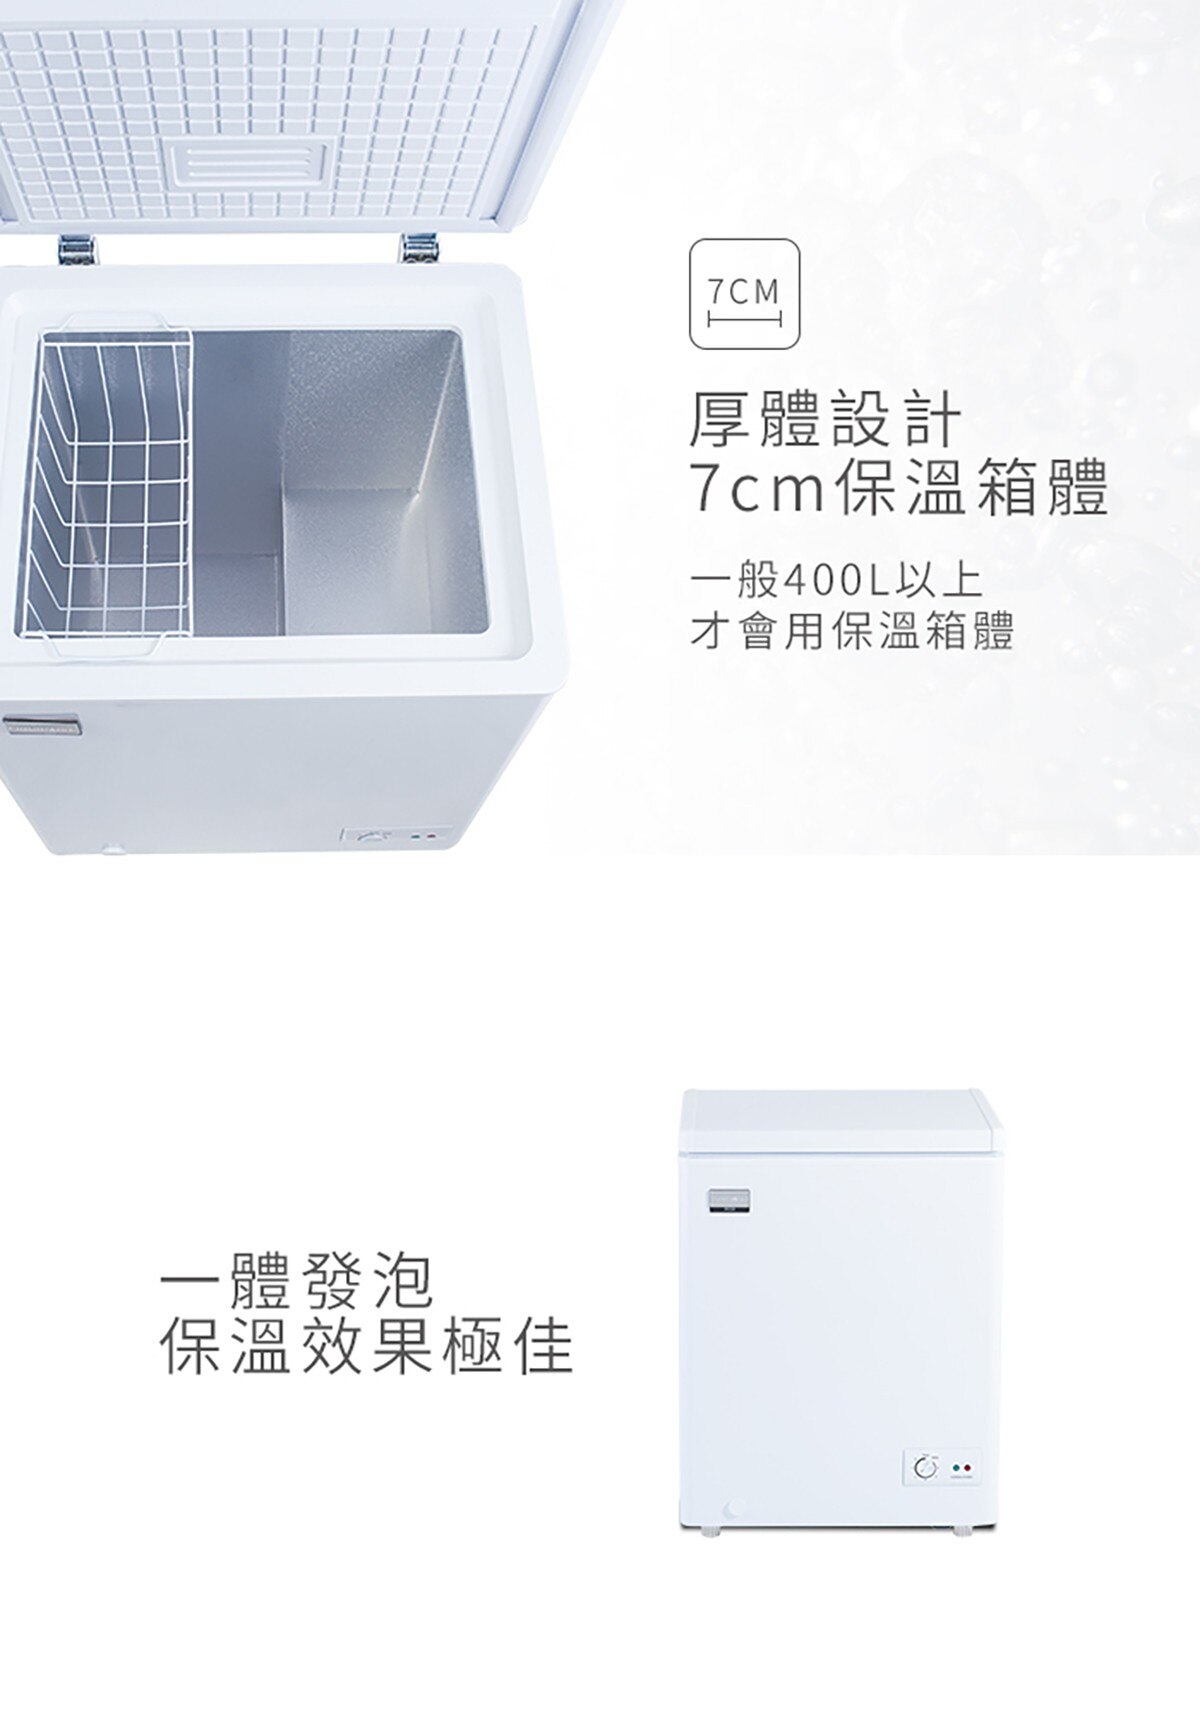 100公升商用臥式冷凍櫃,厚體設計7cm保溫箱體,一般400L以上才會用保溫箱體,一體發泡,包溫效果極佳.